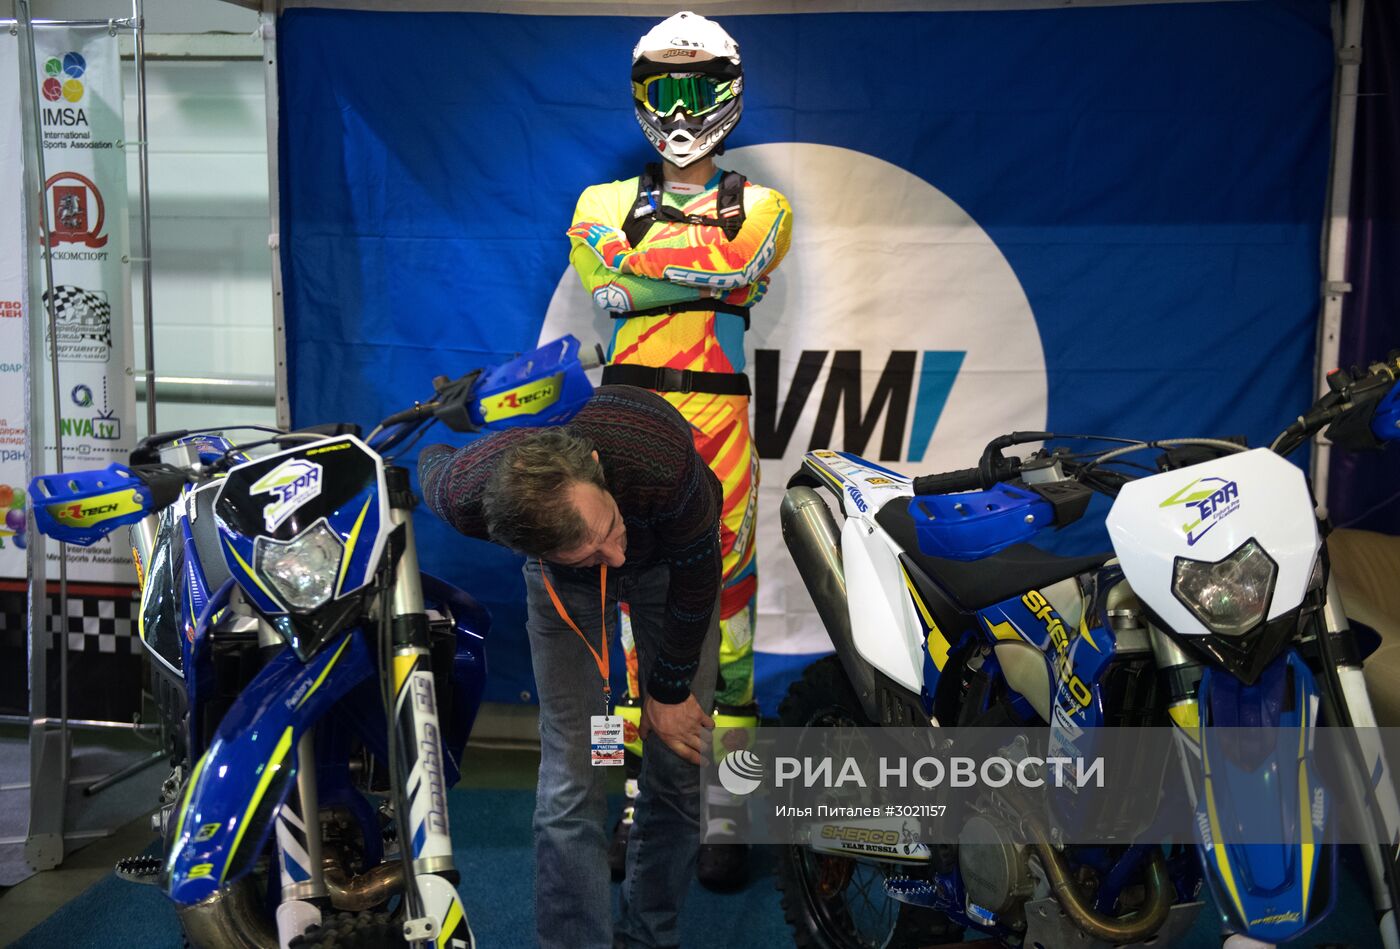 Первая российская выставка "Motorsport Expo"